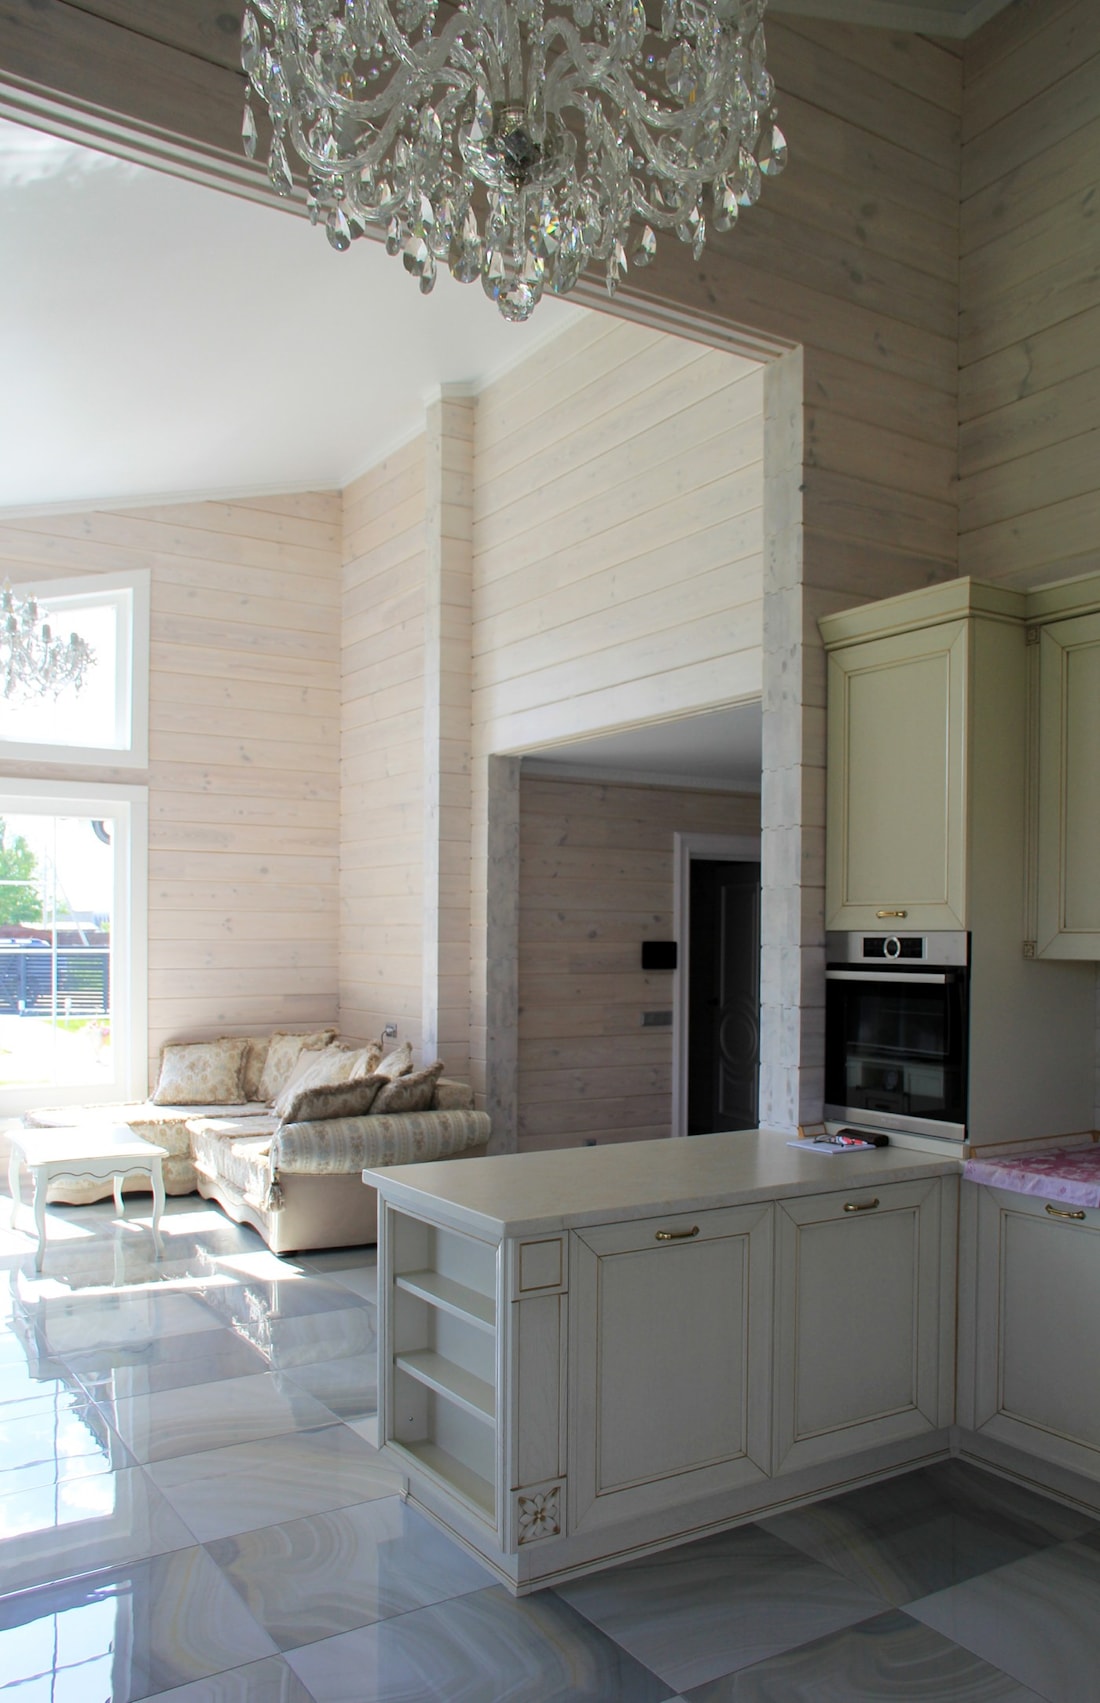 Casa de madera gris de chapa de madera laminada con dos dormitorios, proyecto "Salud"